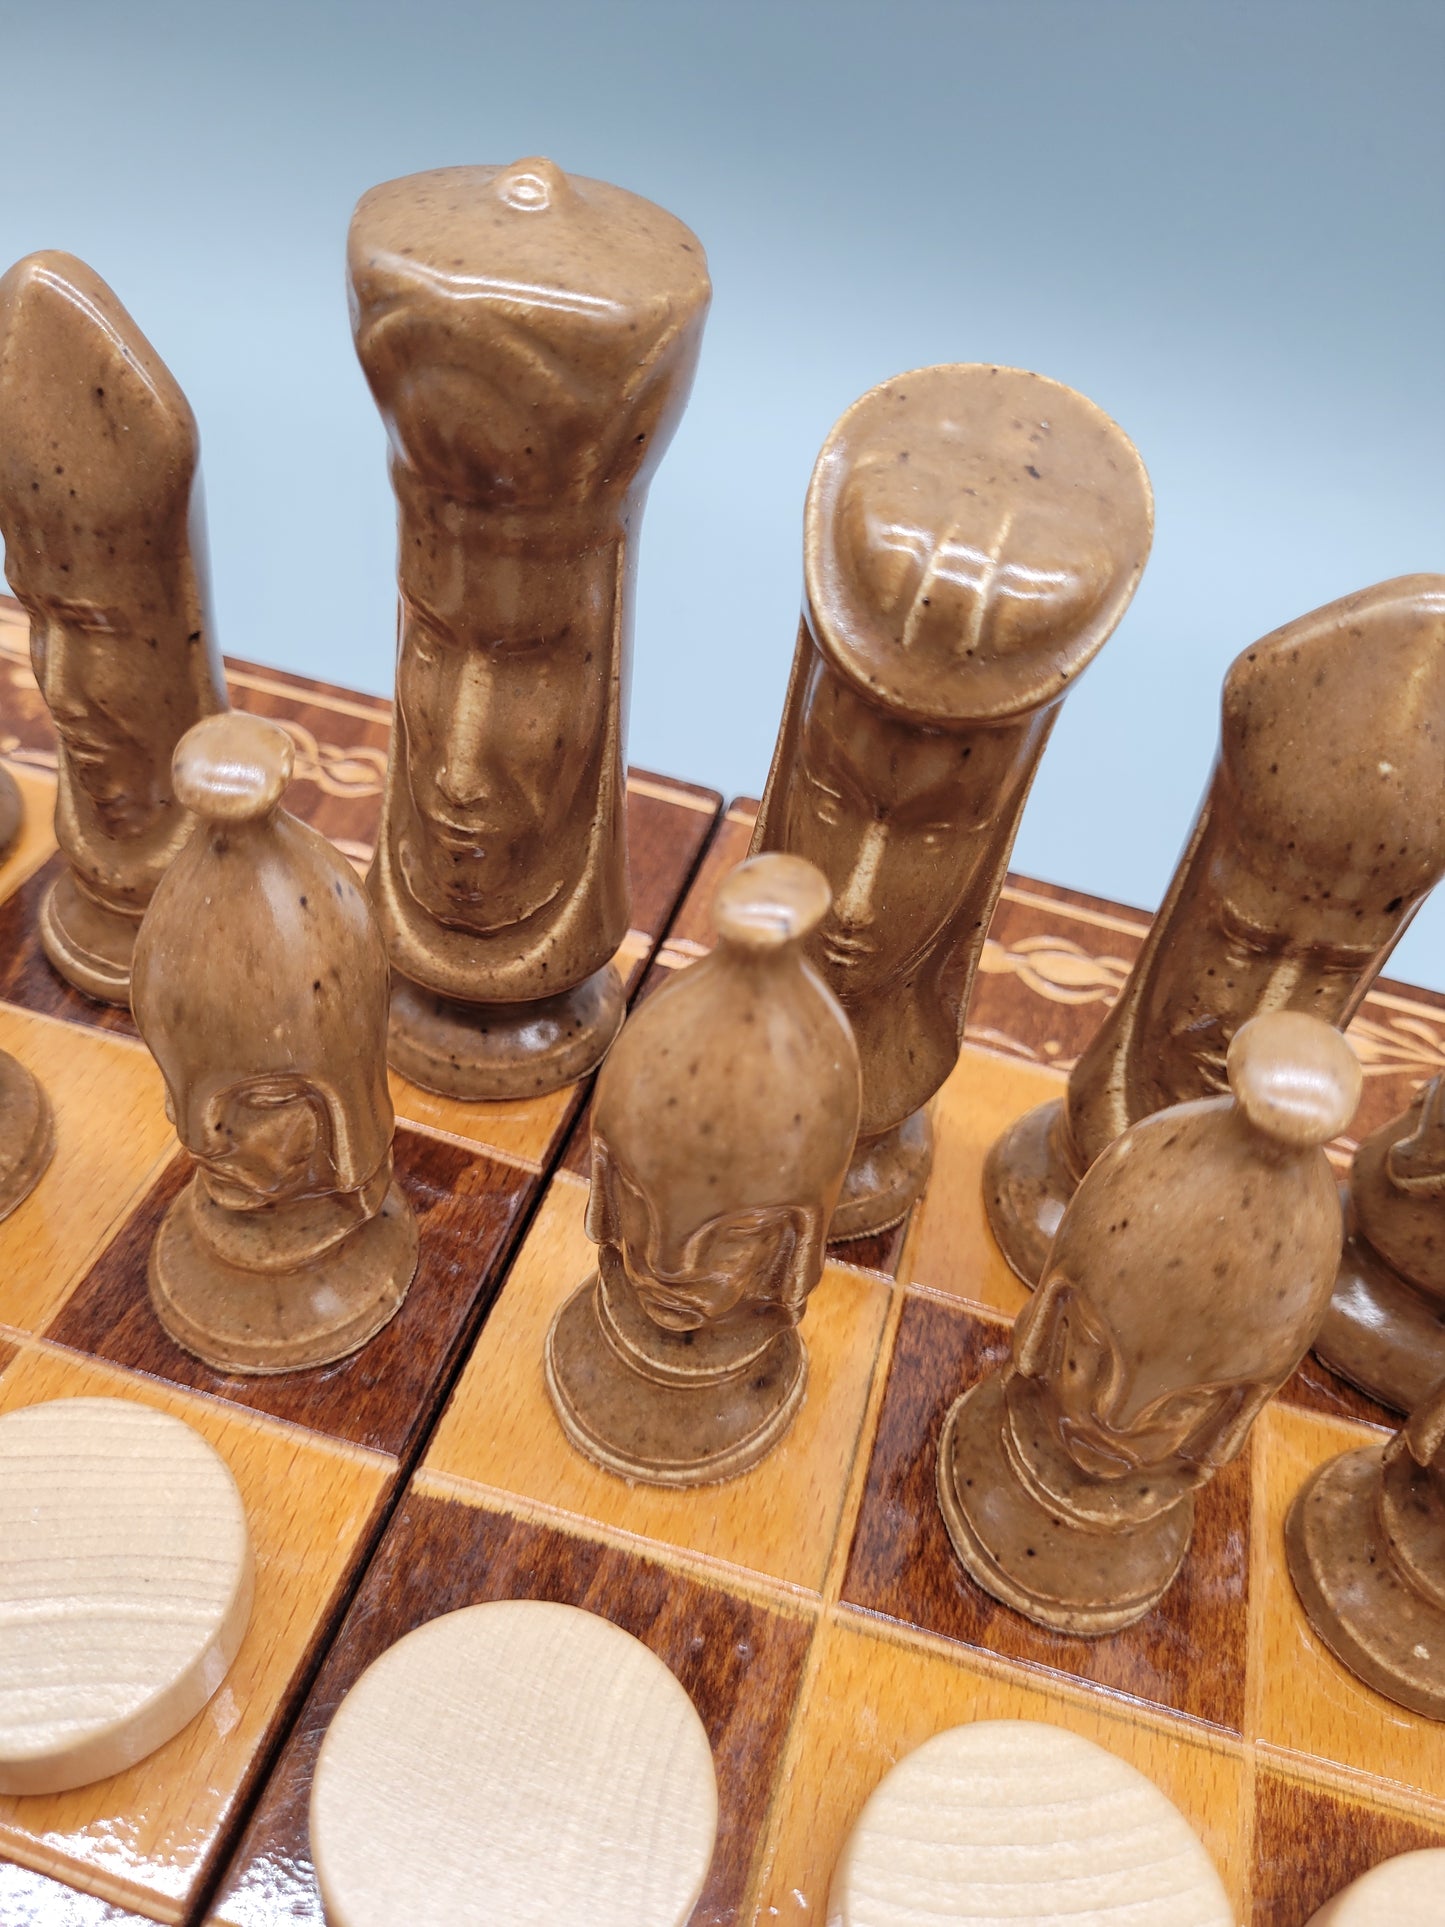 Handgeschnitzte Schachfiguren aus Holz und Marmor mit Schachbrett